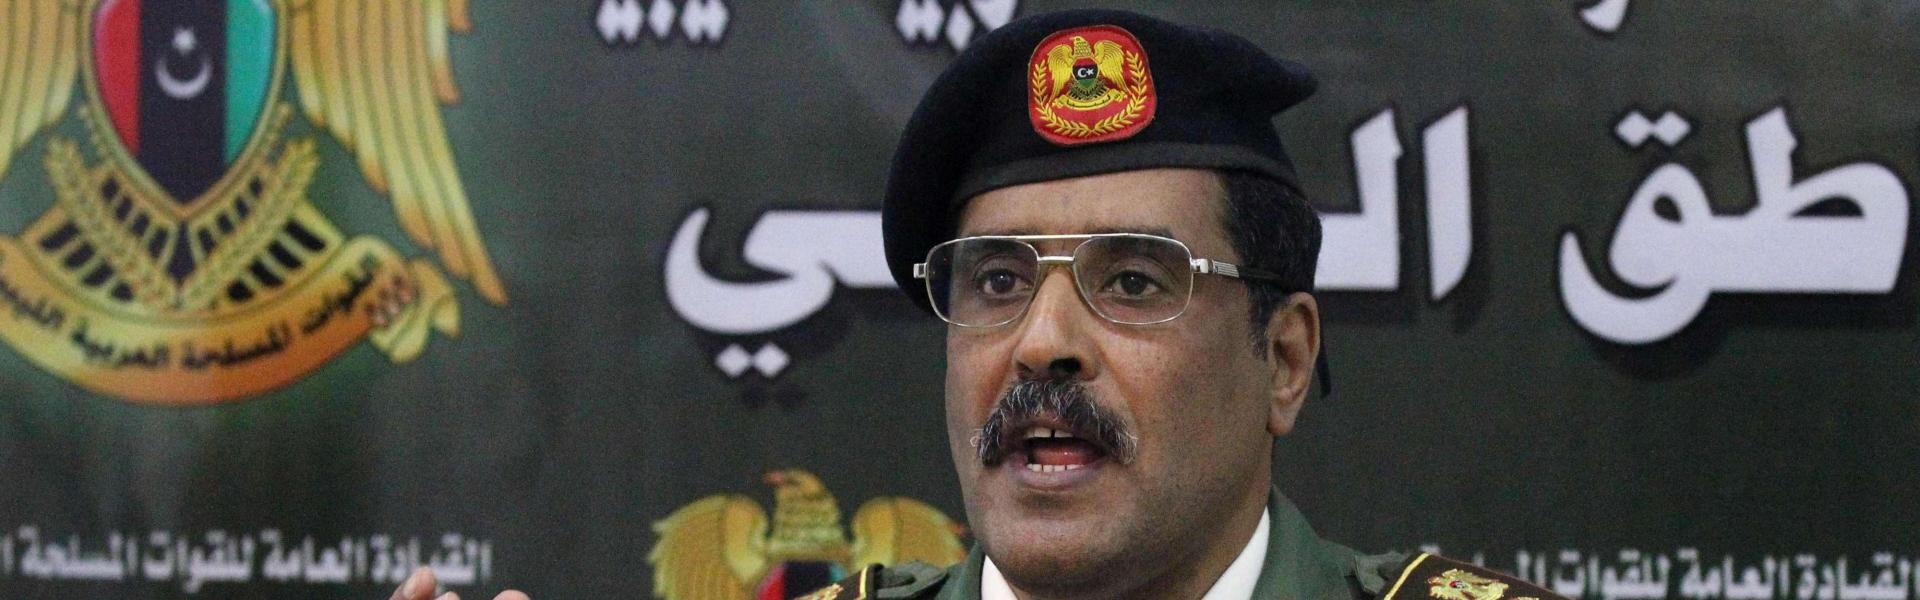 Ανώτατος αξιωματικός του στρατού της Λιβύης: Η Τουρκία στηρίζει τρομοκρατικές ομάδες – Ο ΟΗΕ να κάνει σχετική έρευνα